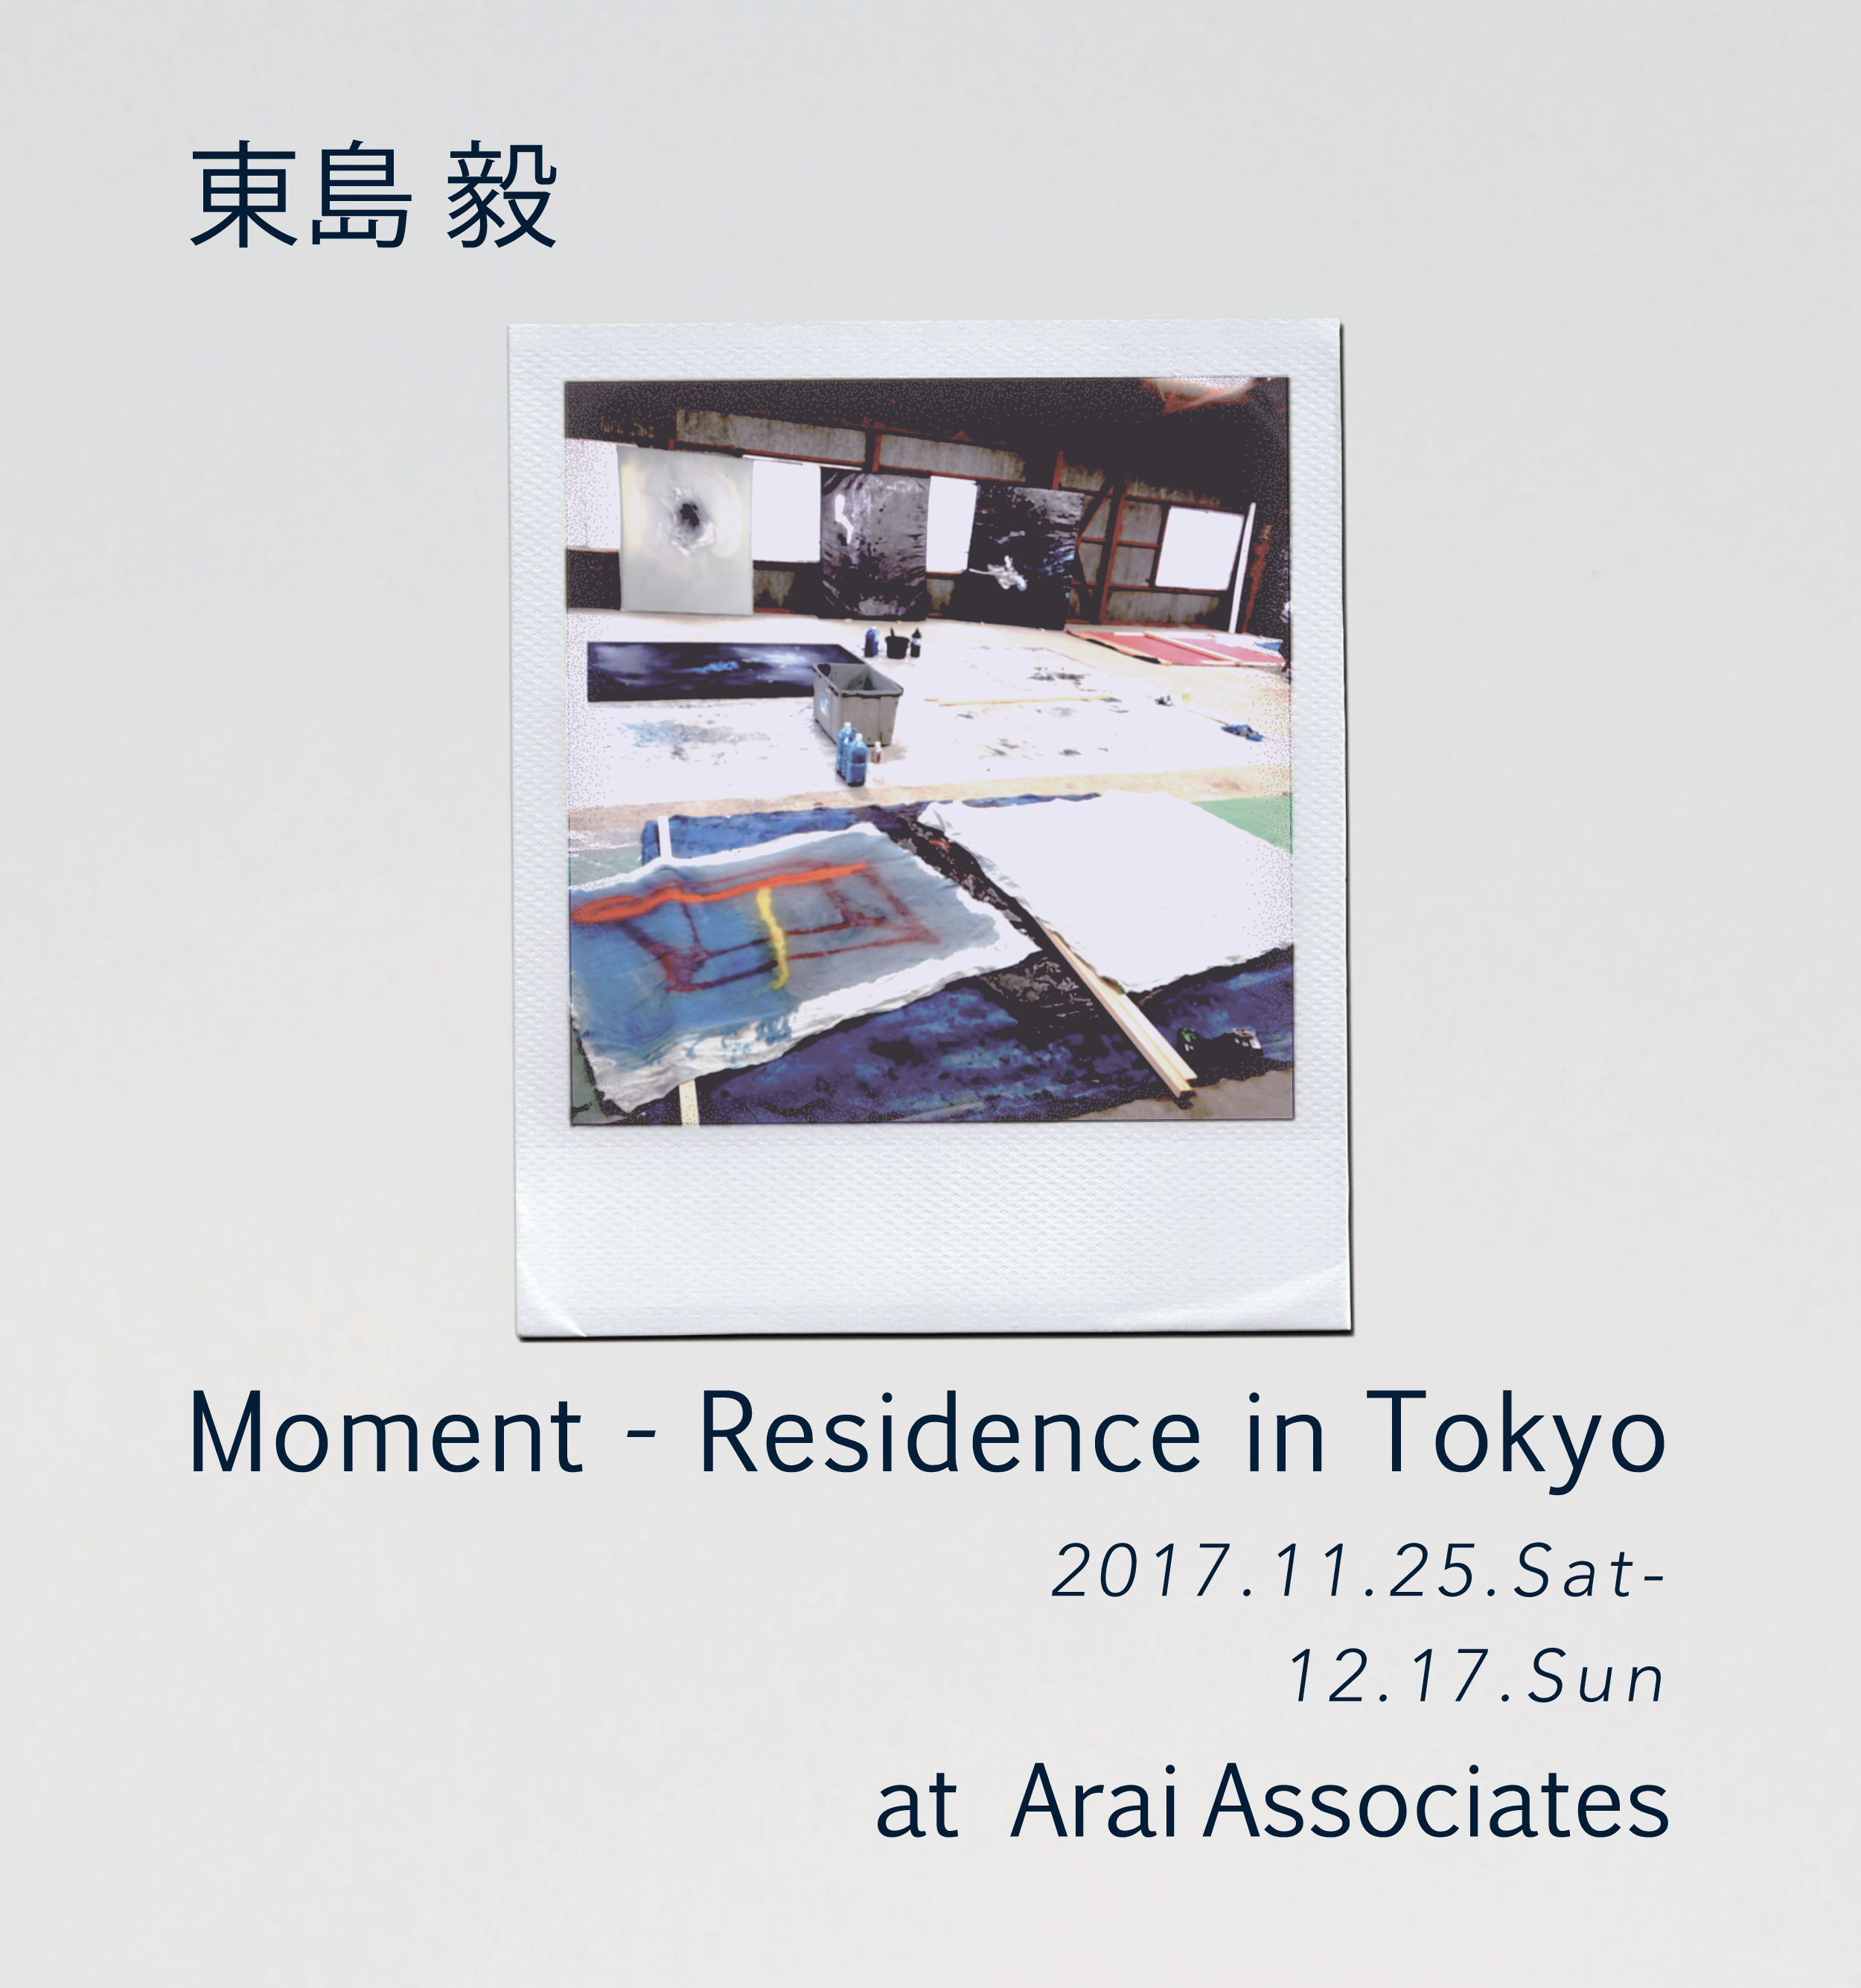 東島 毅「Moment - Residence in Tokyo」